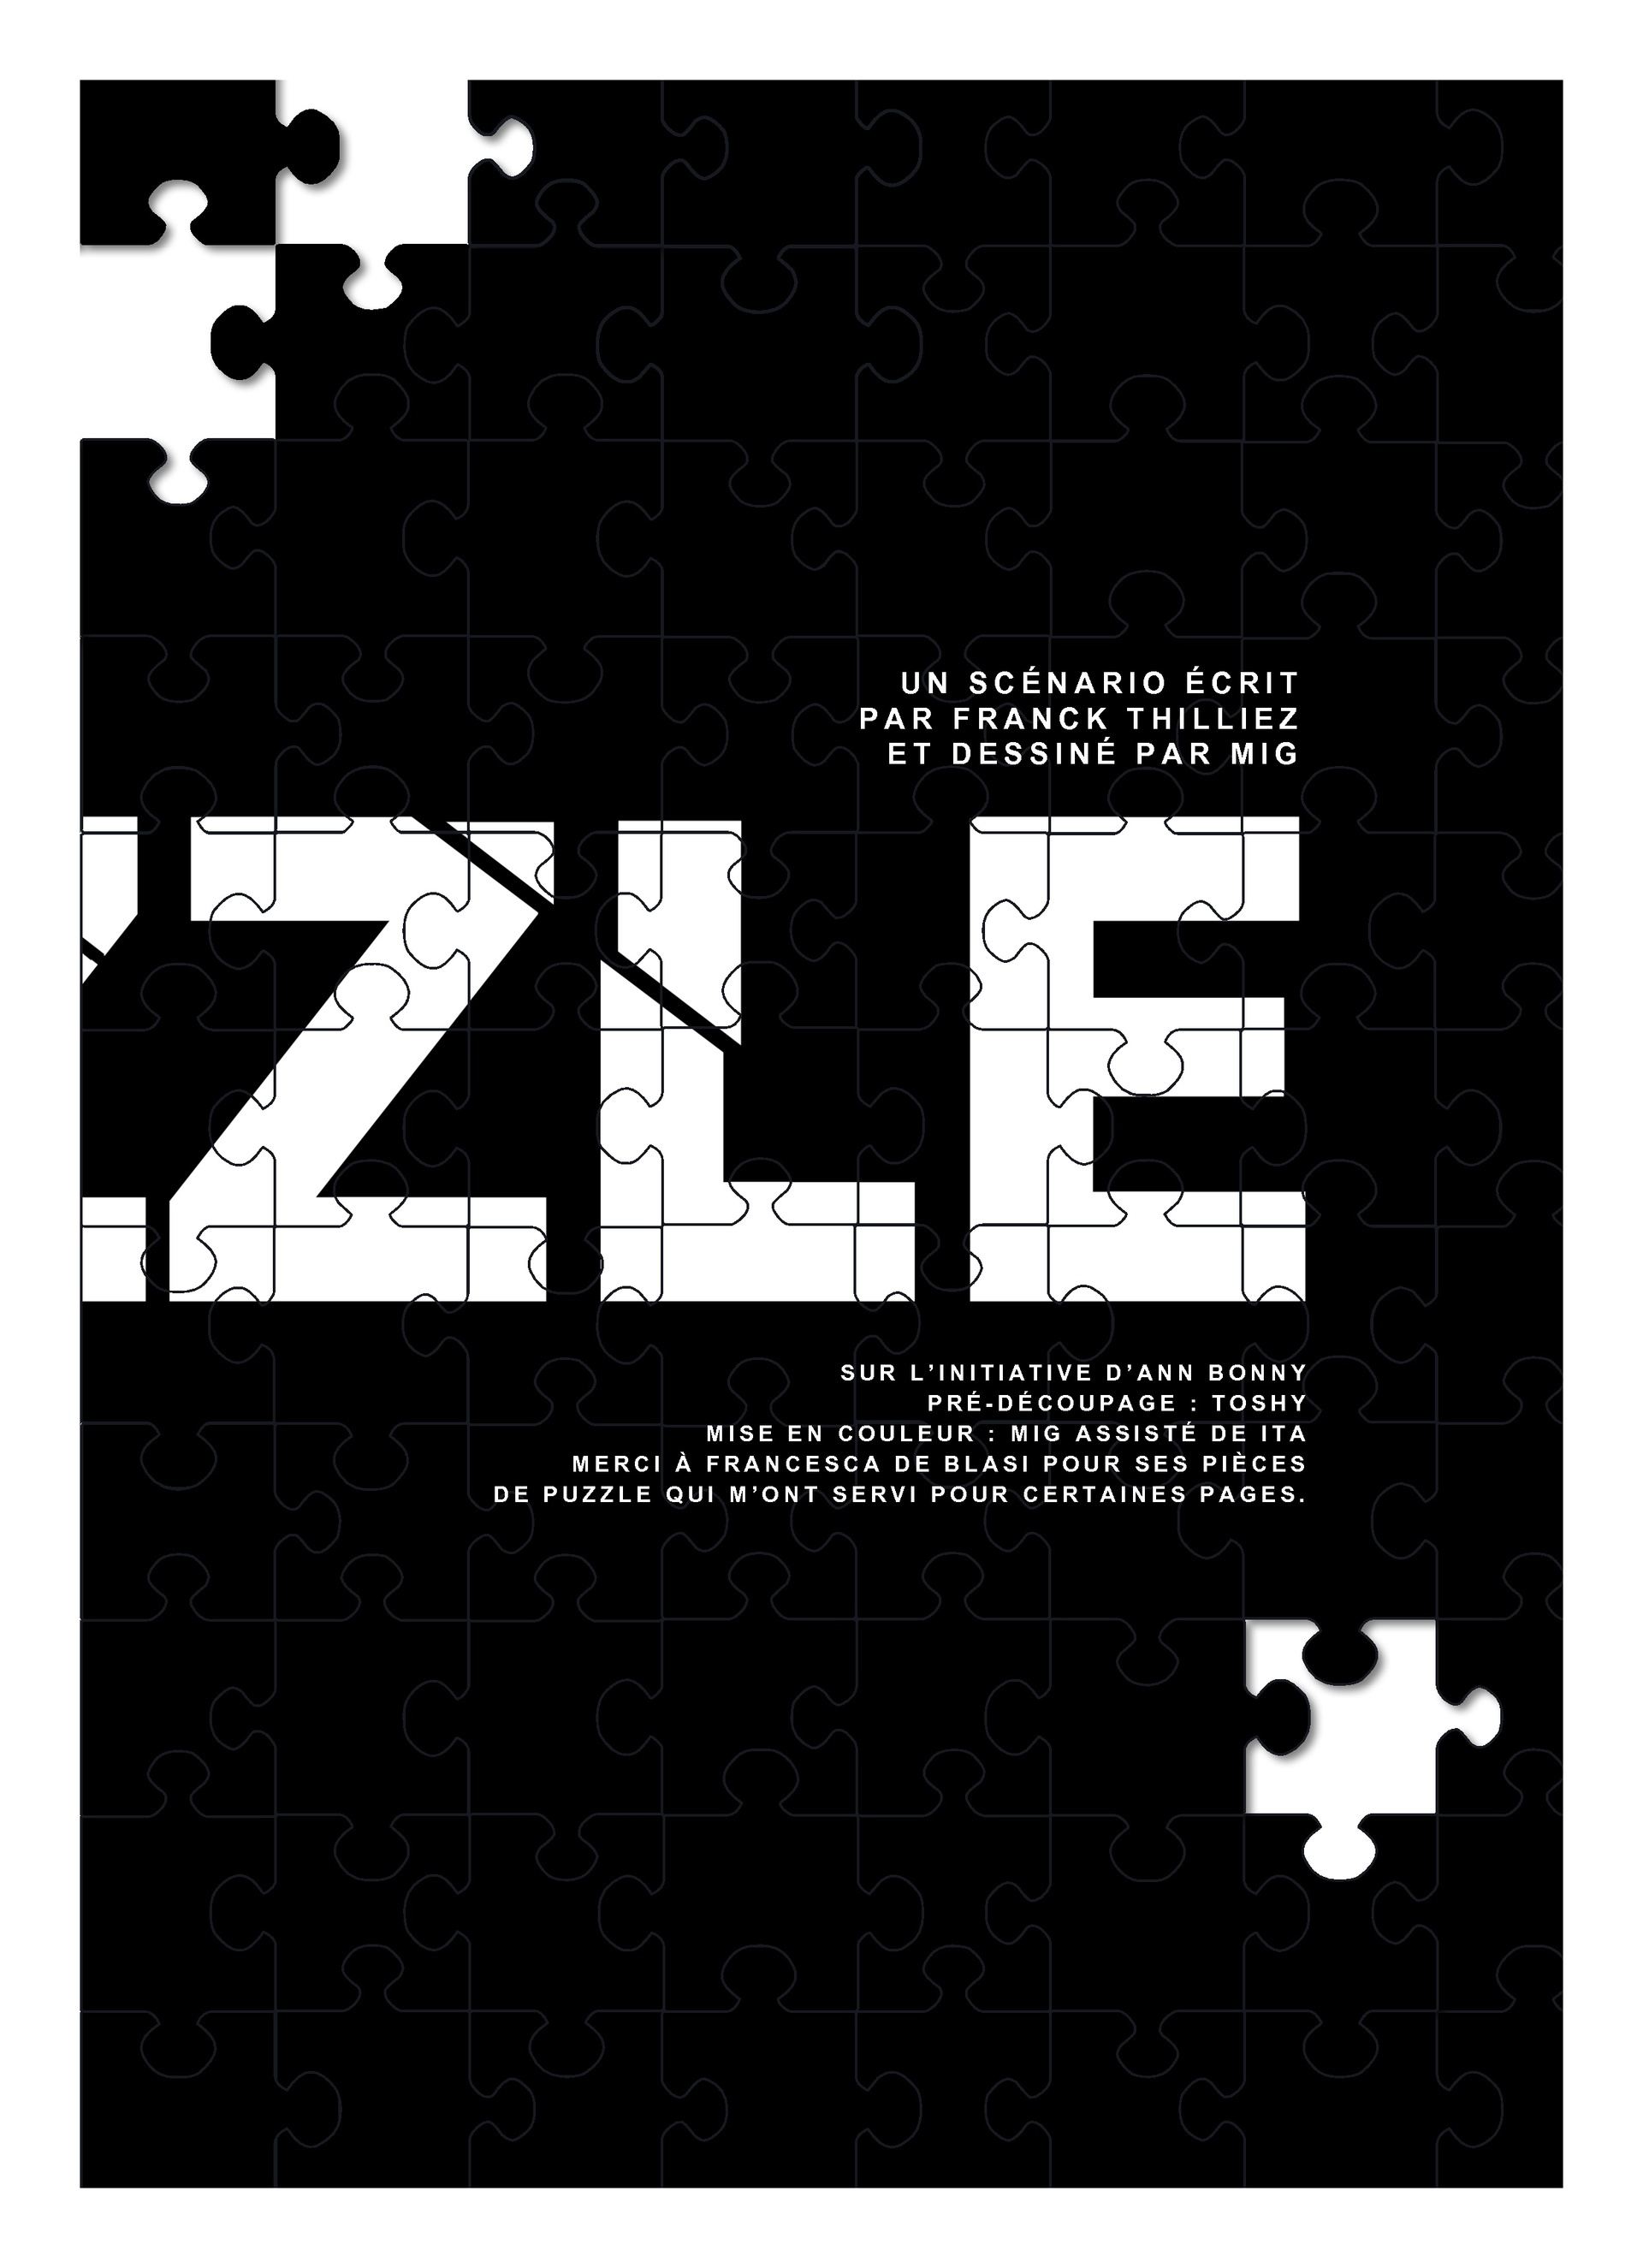 Puzzle - Mig, Franck Thilliez